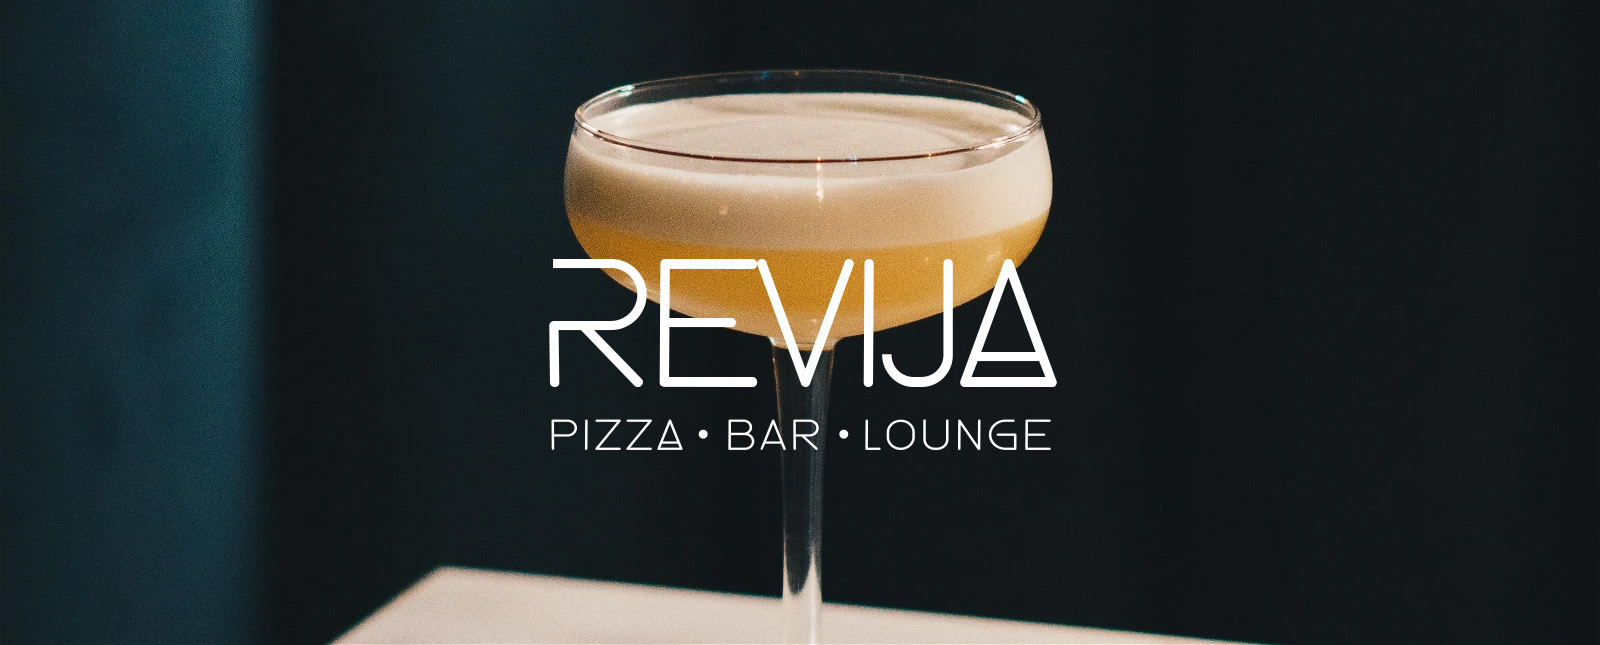 Revija coffe and pizza 0